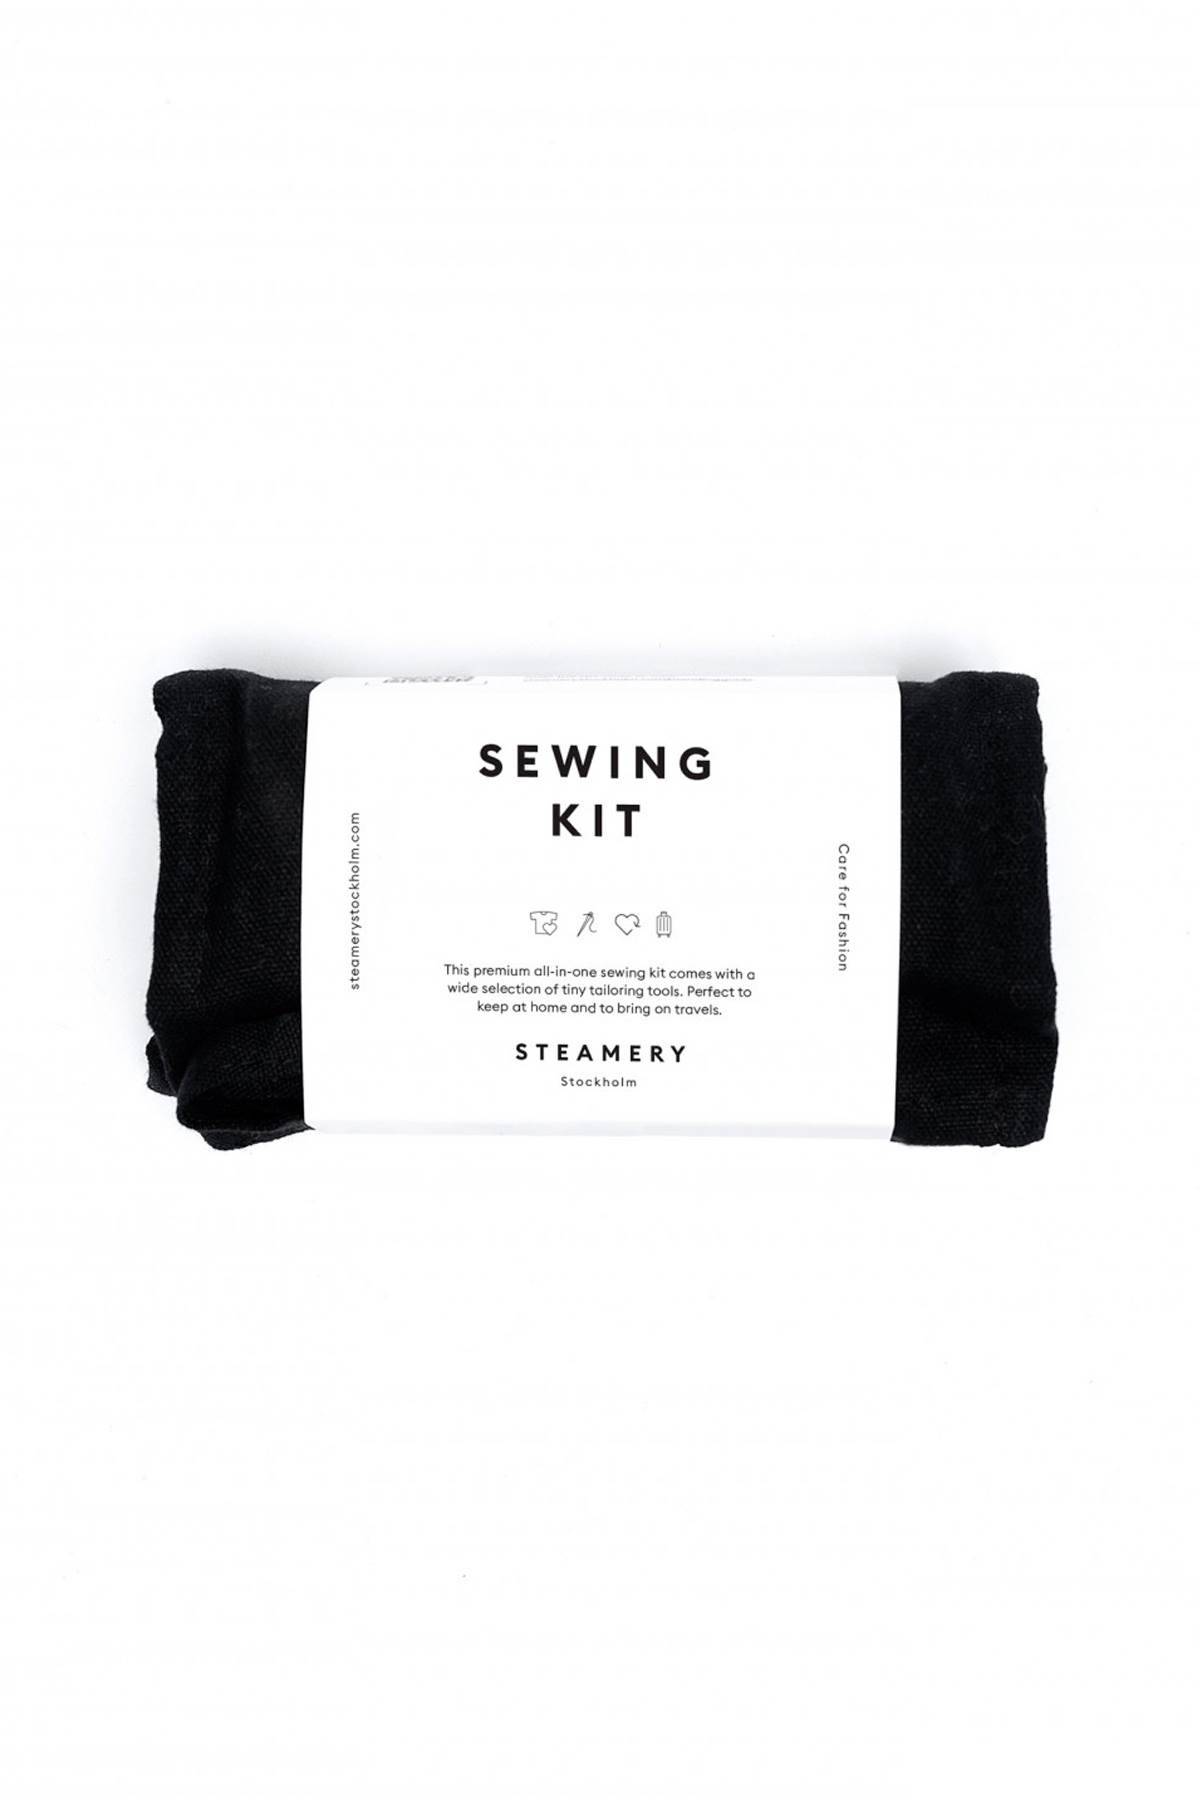 STEAMERY STEAMERY sewing kit